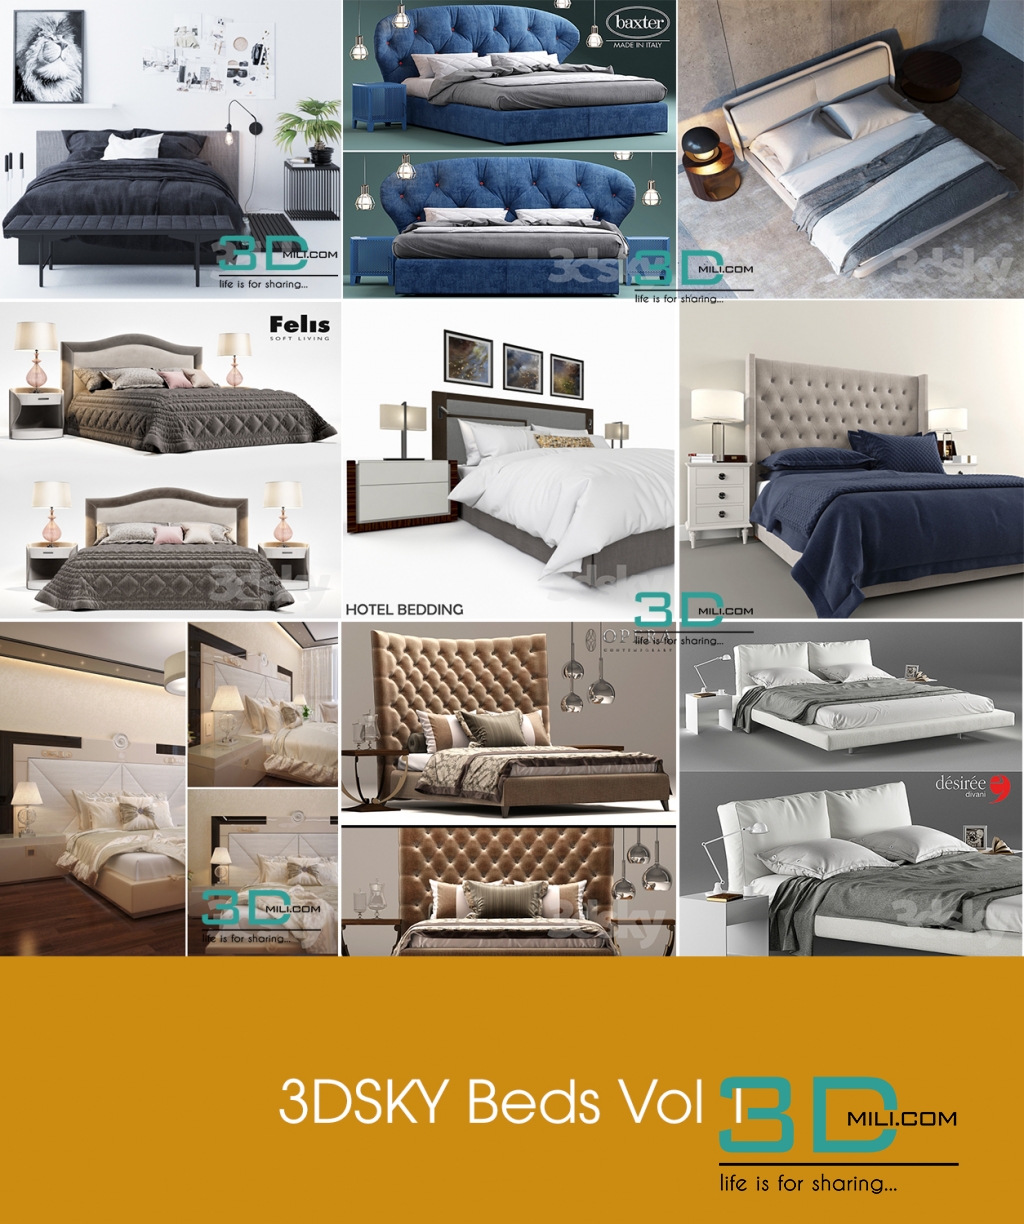 3dsky Bed Vol 1 Free Download 3dmili 2020 Download 3d Model Free 3d Models 3d Model Download